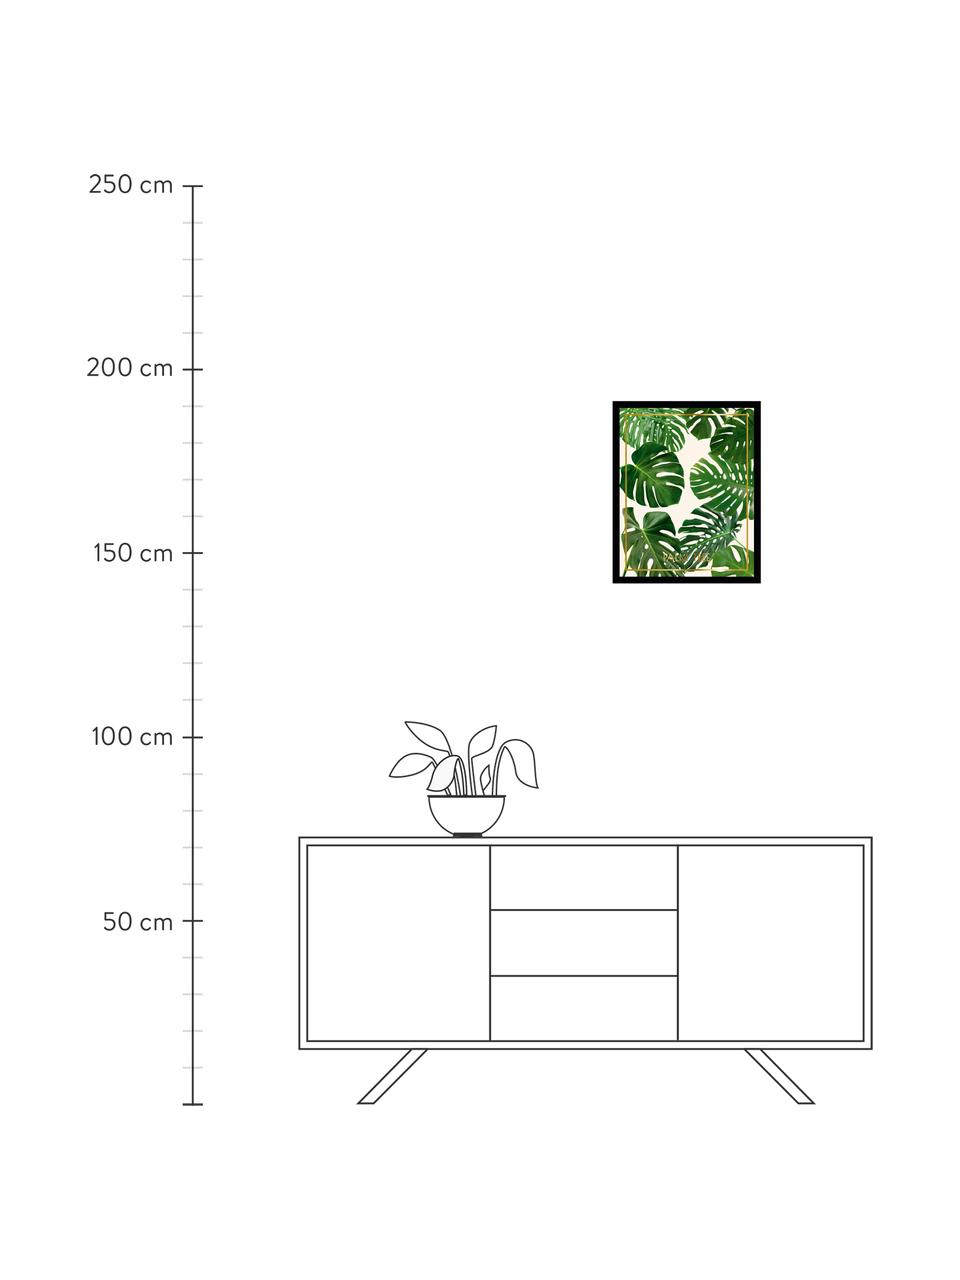 Stampa digitale incorniciata Palm Tree II, Immagine: stampa digitale, Cornice: telaio in materiale sinte, Multicolore, L 40 x A 50 cm